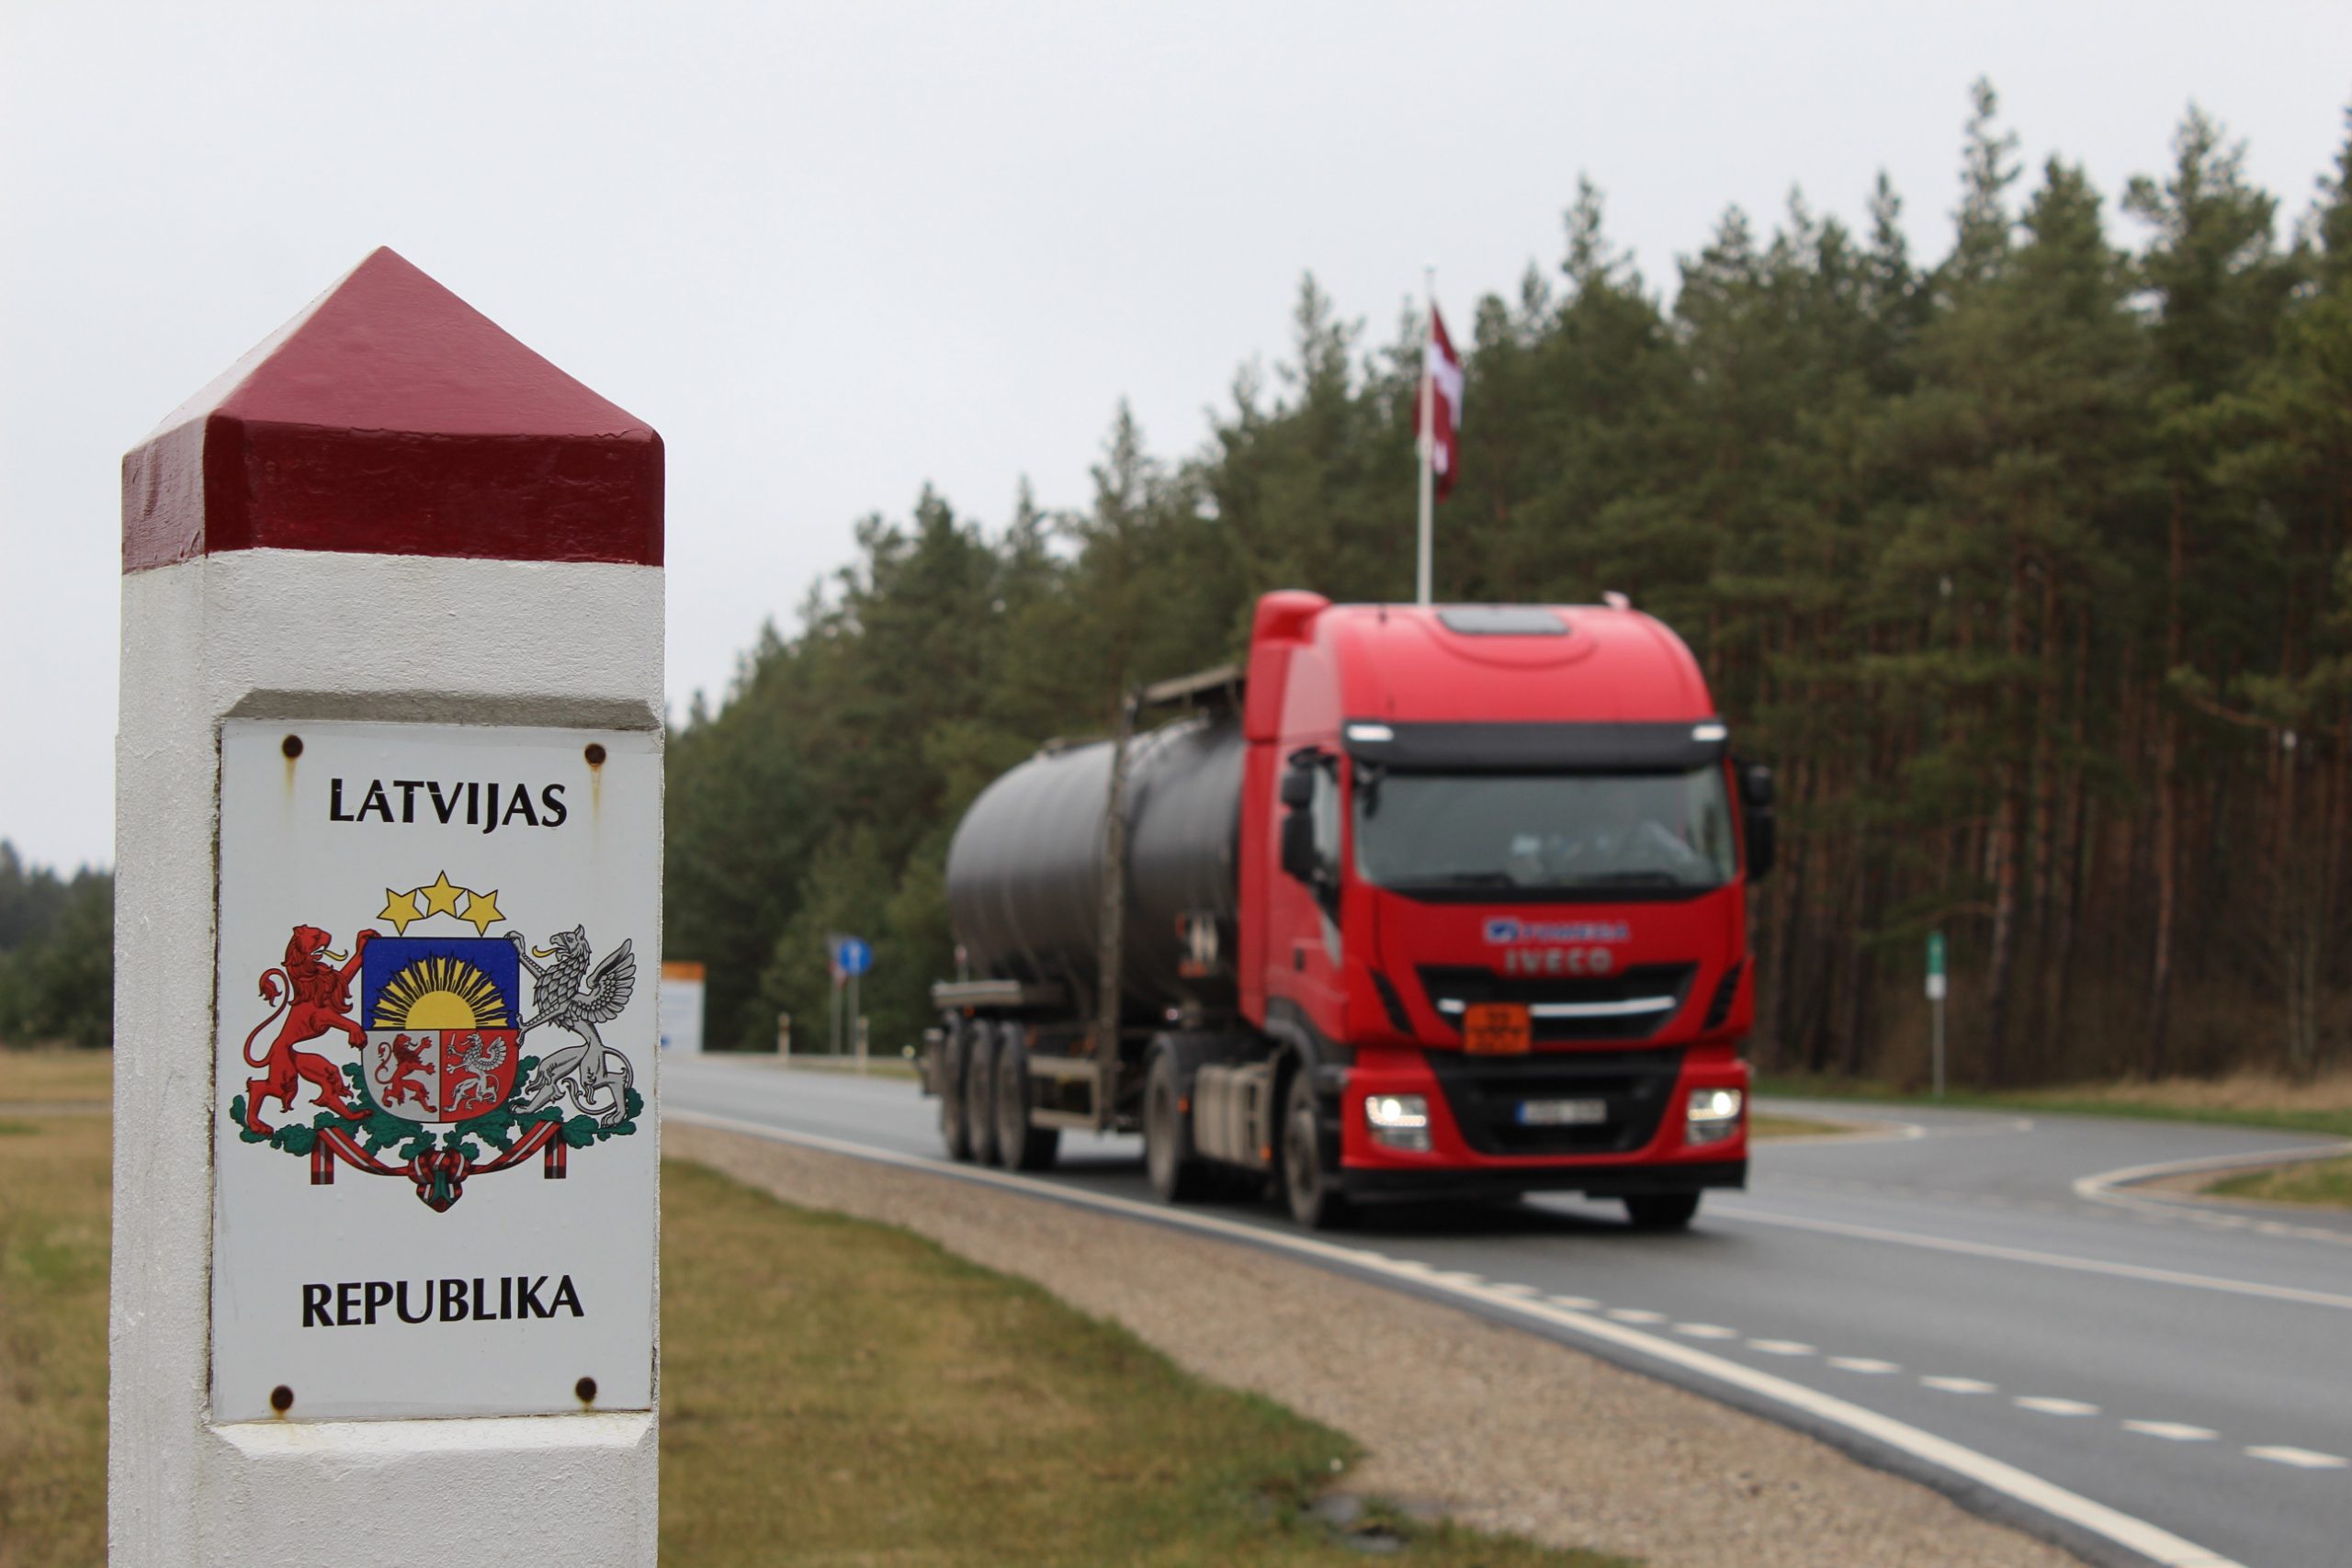 Vilkikai sieną su Latvija kerta nesustodami, tačiau kai kuriems lengviesiems automobiliams tenka grįžti atgal